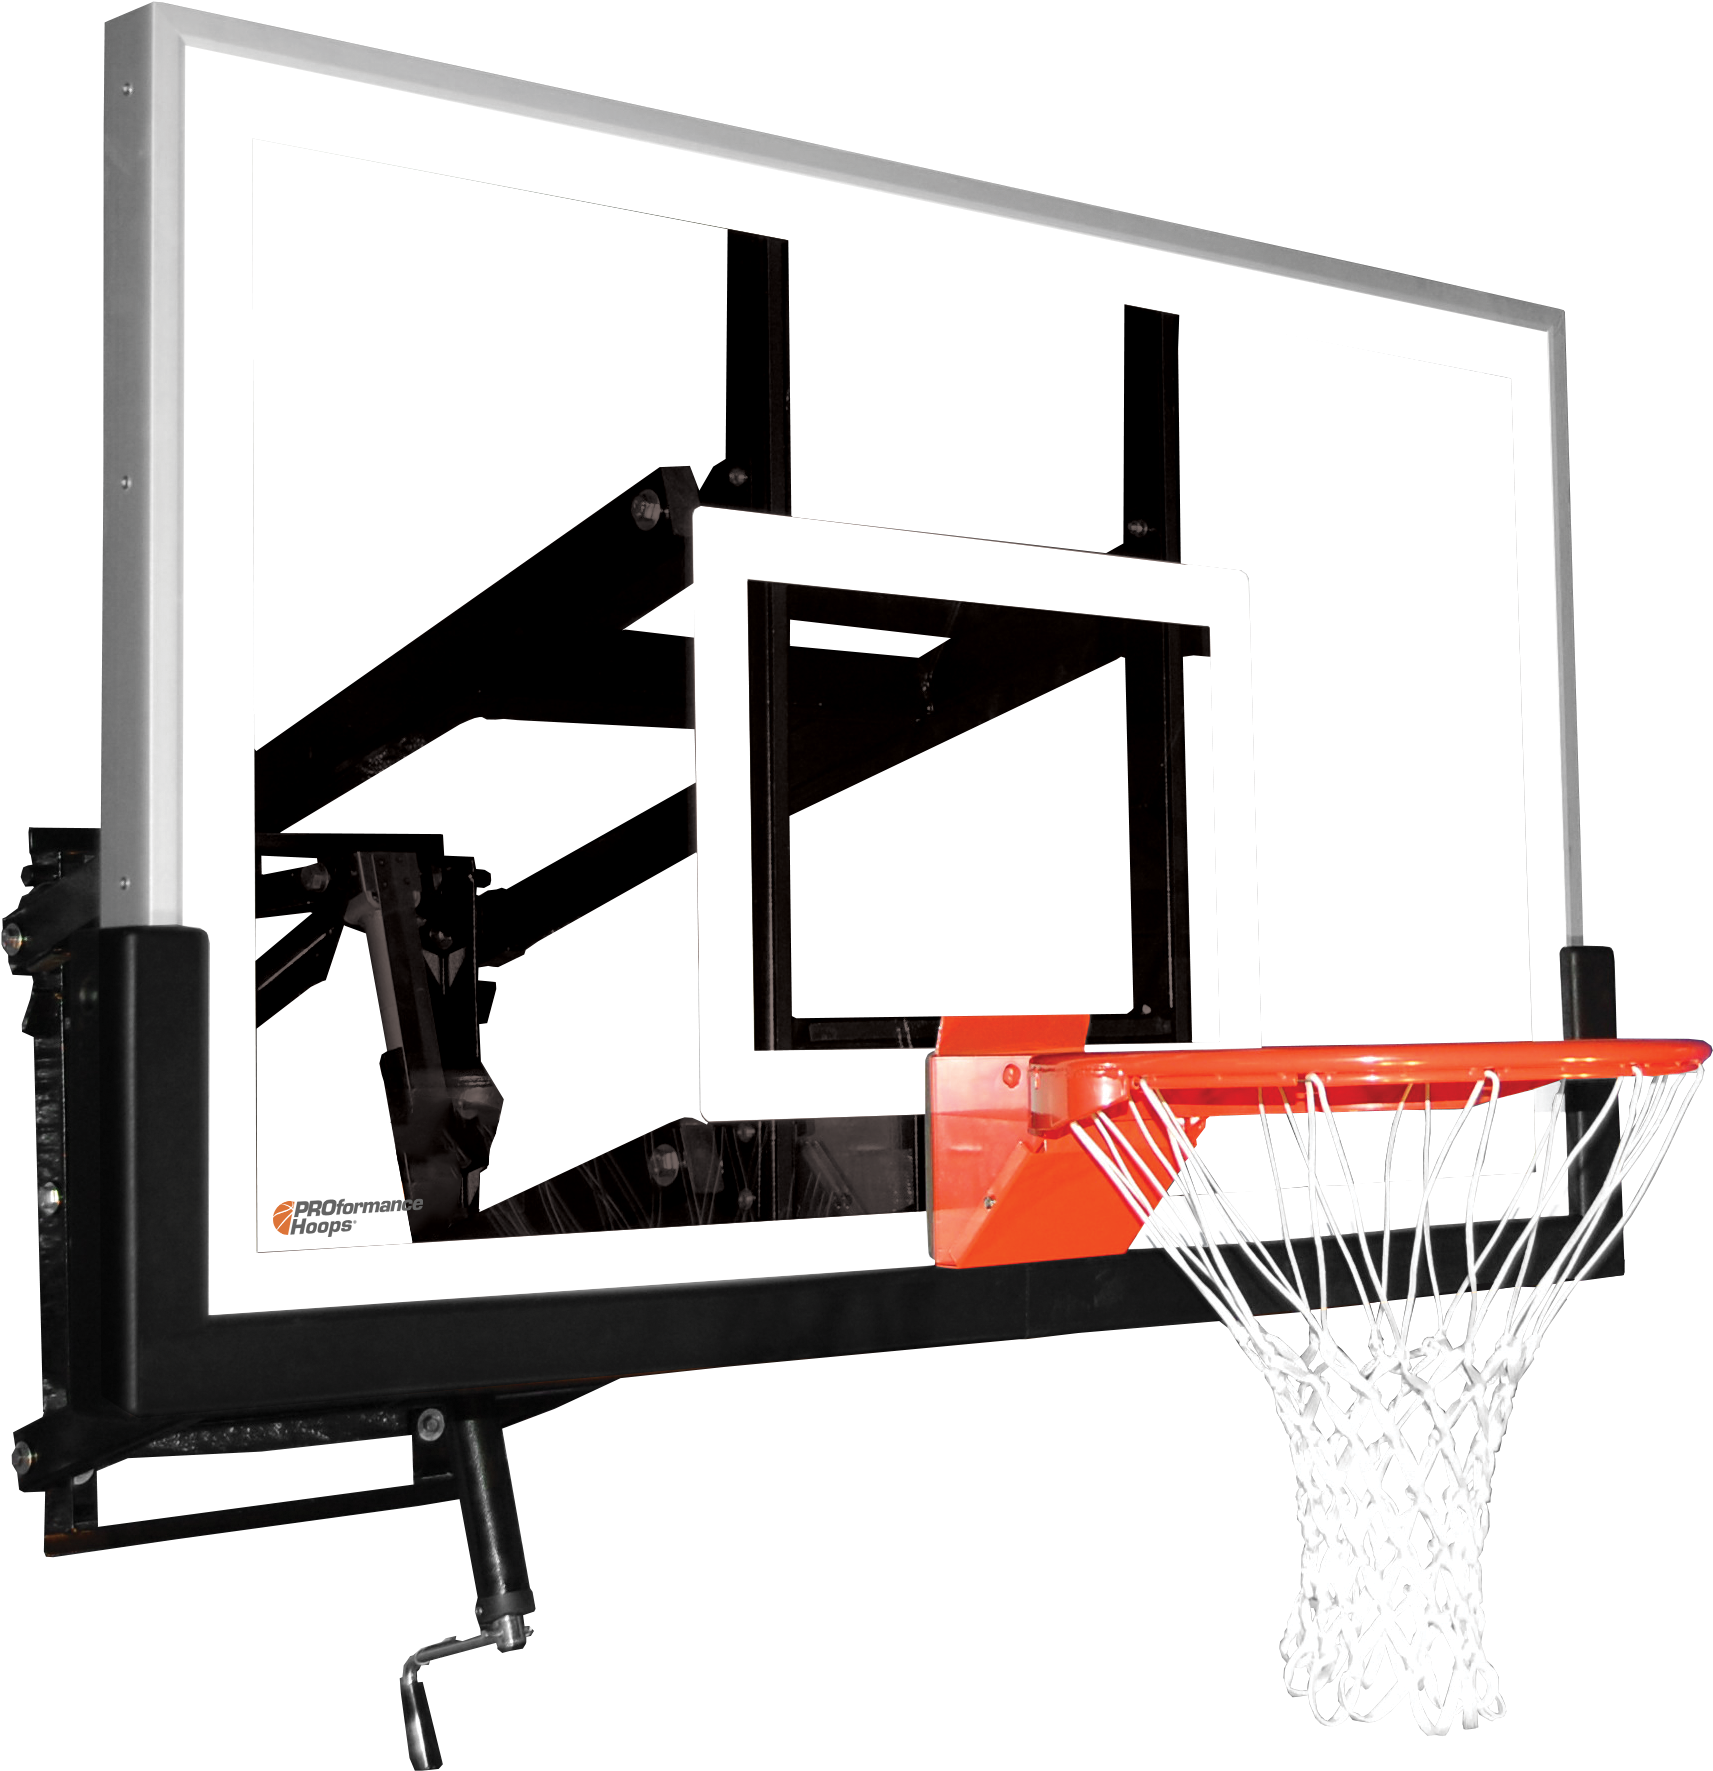 Wall Mount Wm60 Adjustable Basketball Hoop With 60 - Basketball (3008x2000)